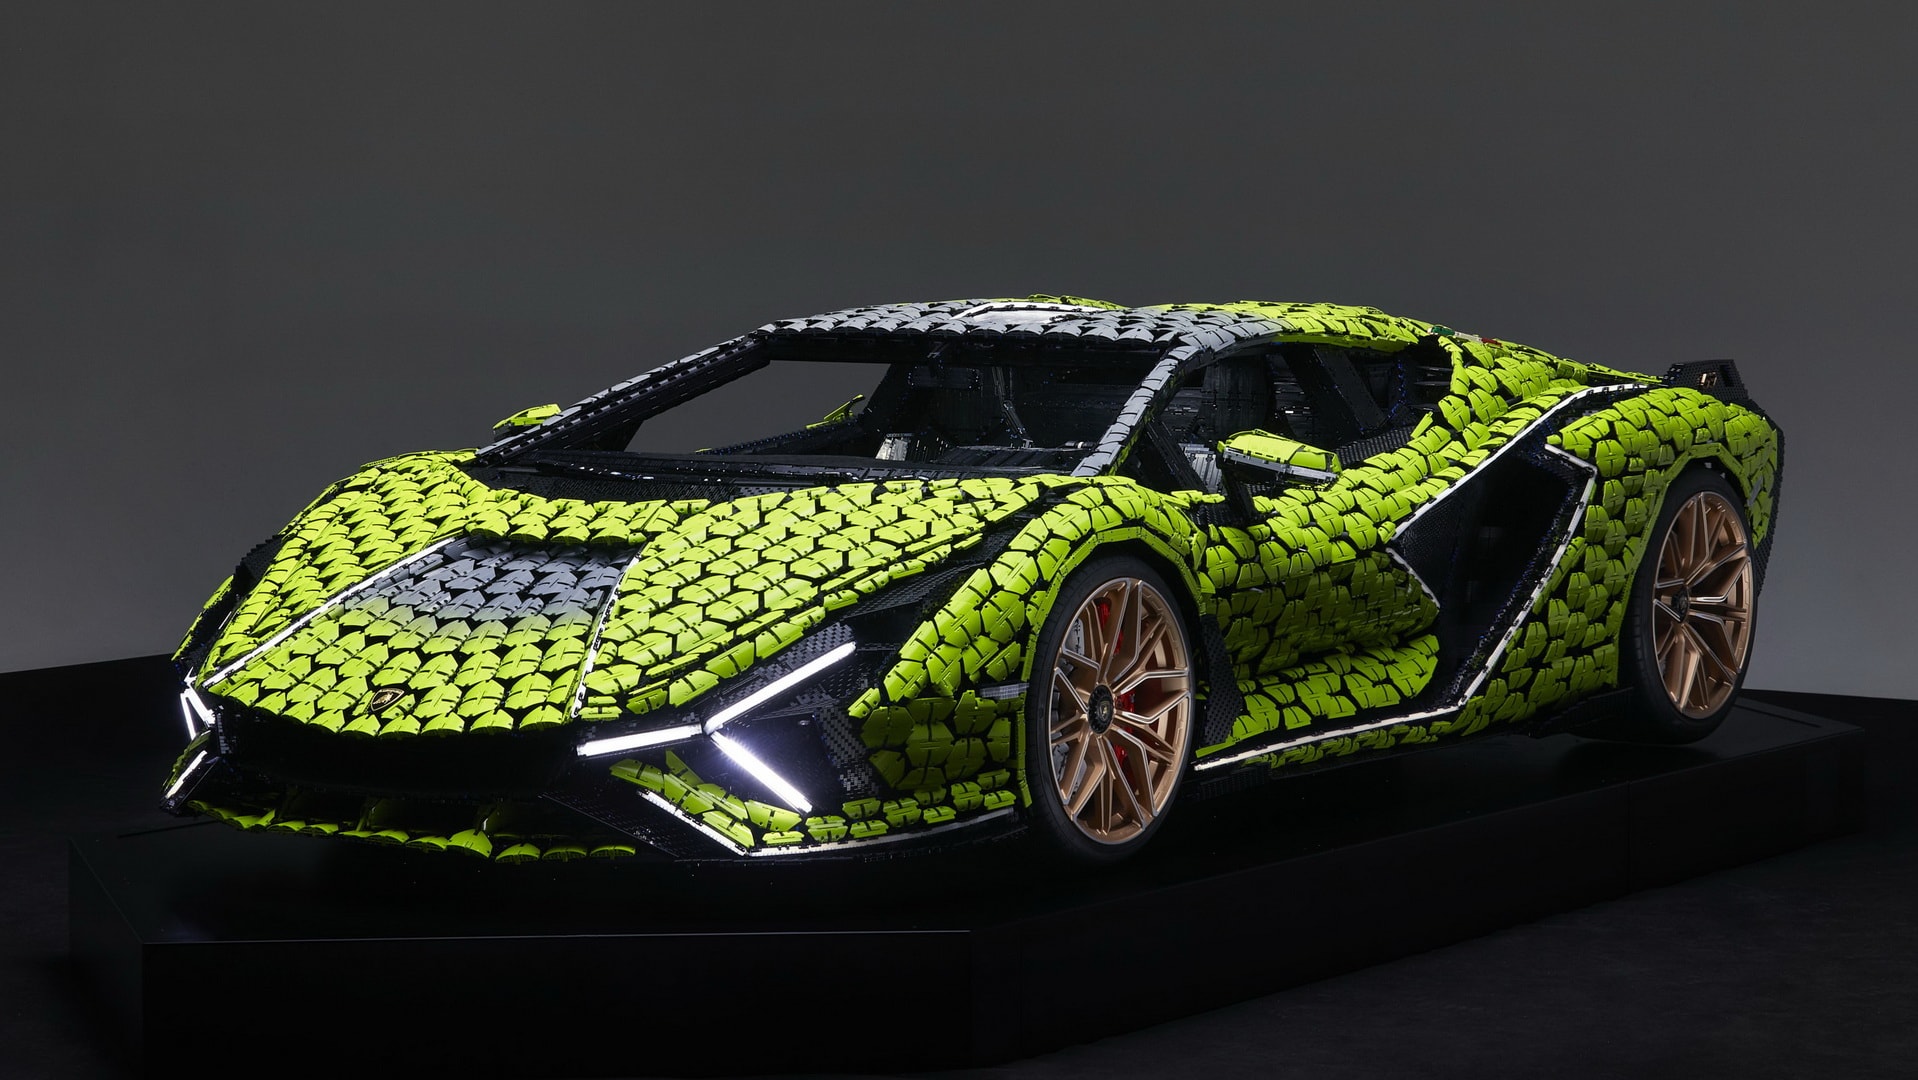 LEGO Technic Builds Epic Lamborghini Sian 37 Replica - autoevolution